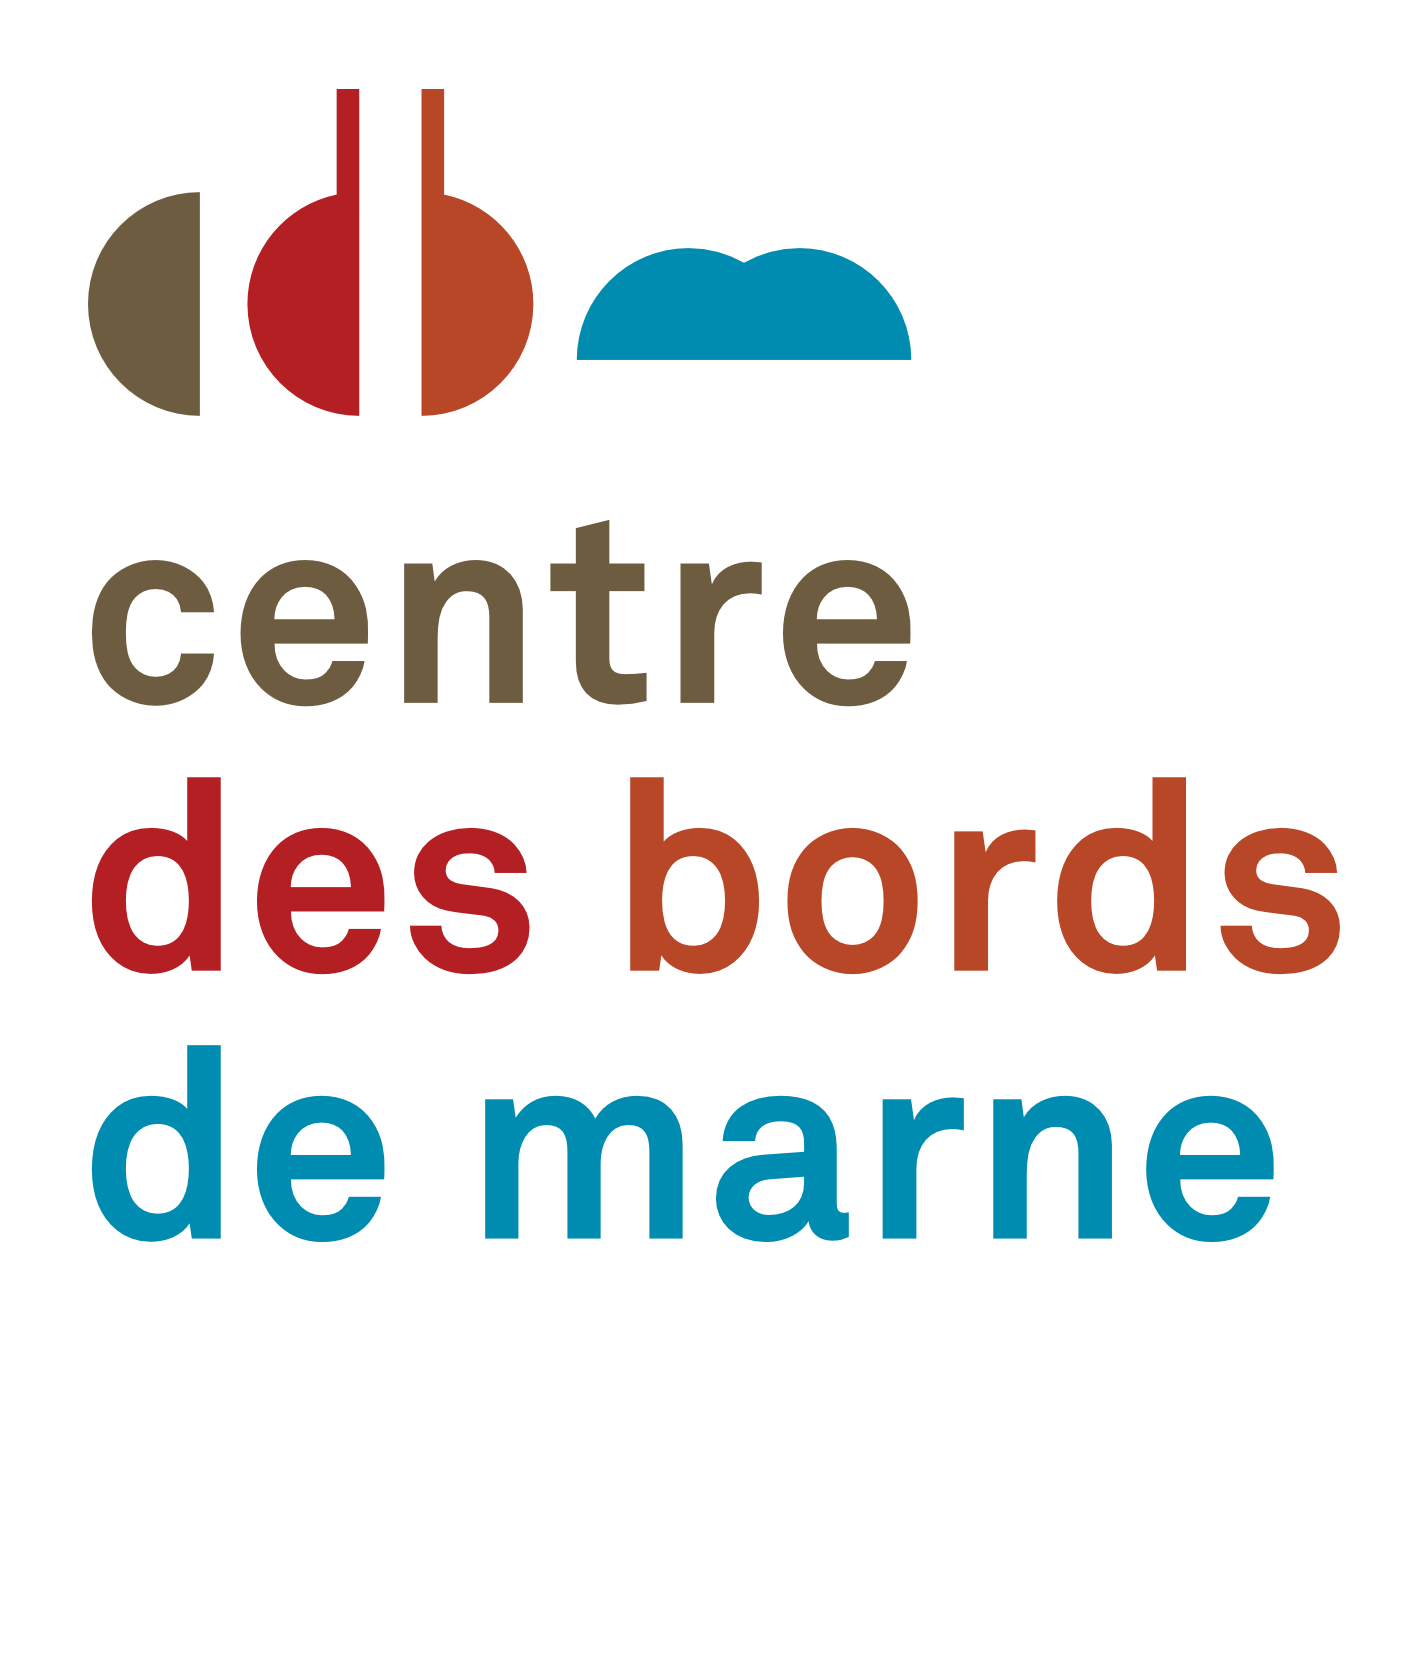 CdbM - Le Perreux sur Marne